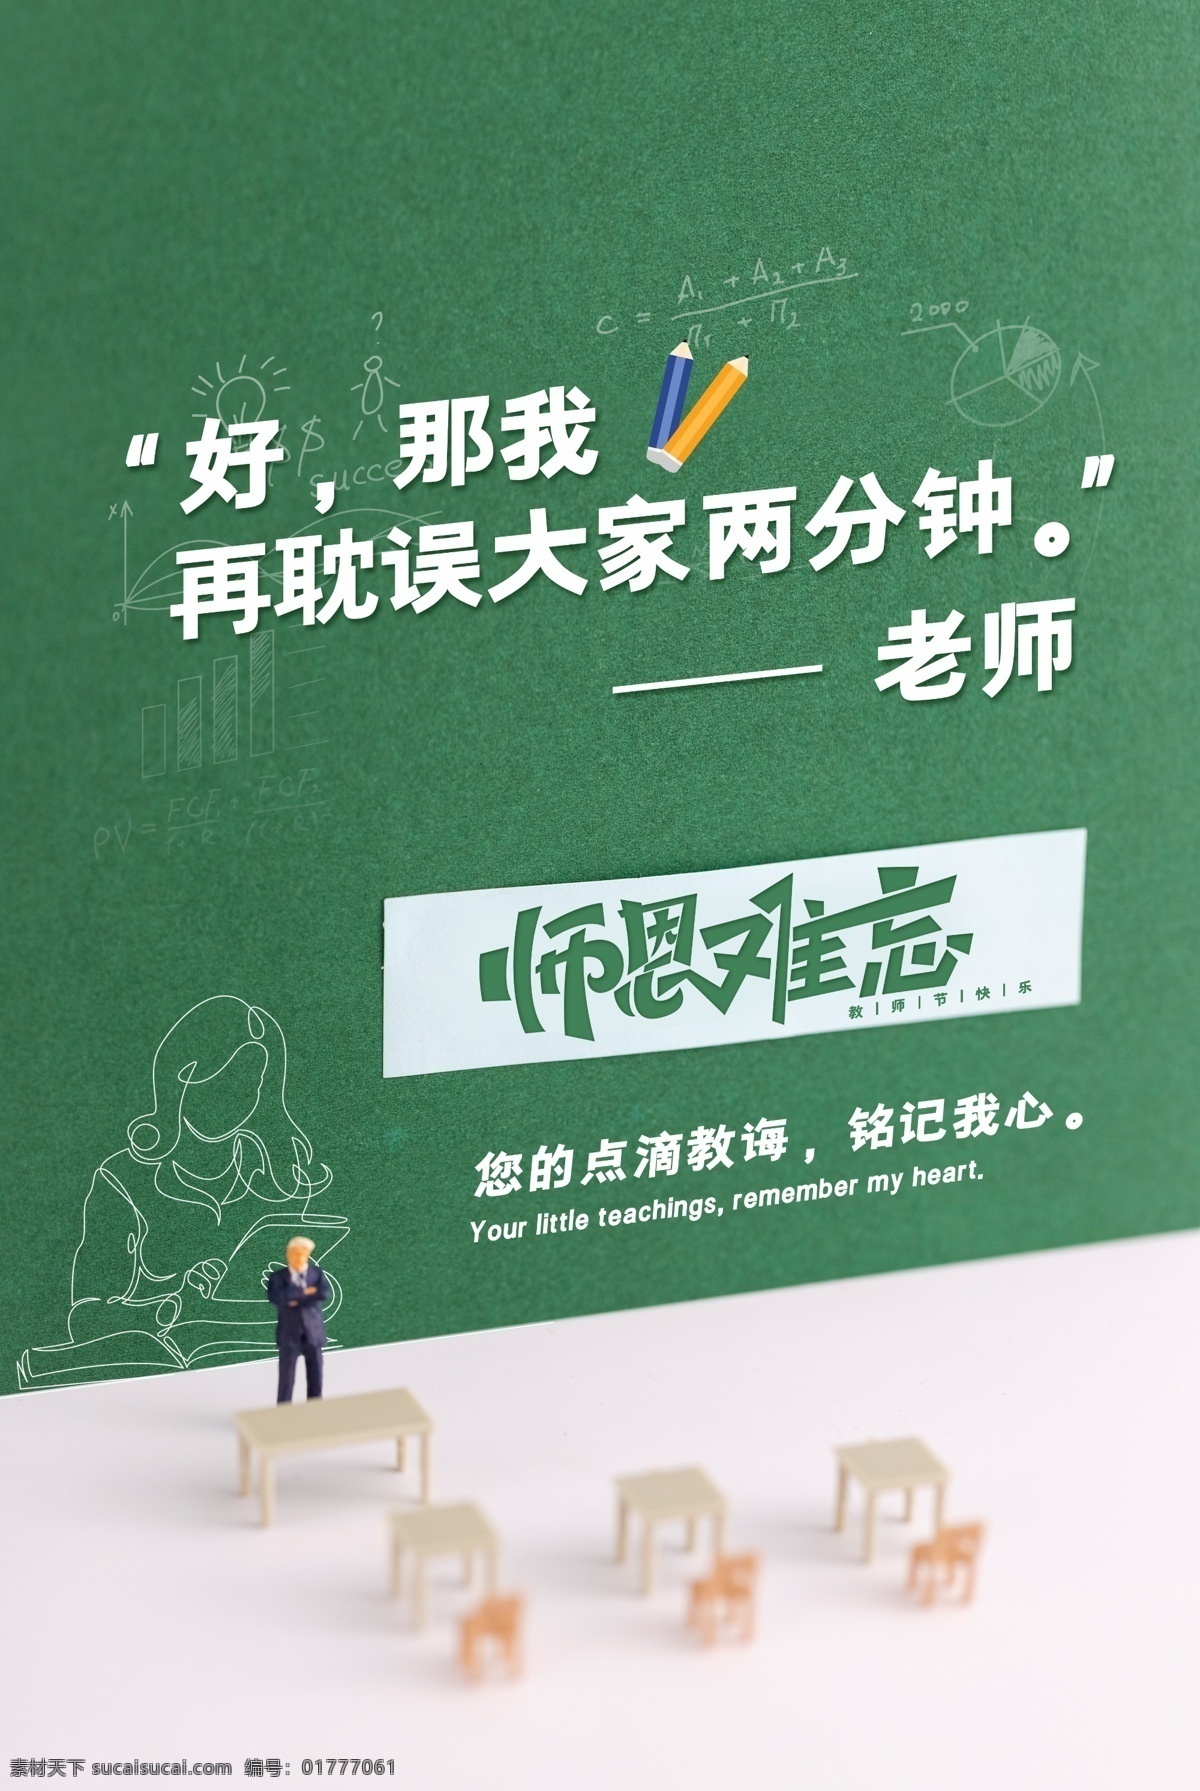 创意 老师 语录 教师节 节日 宣传海报 宣传 海报